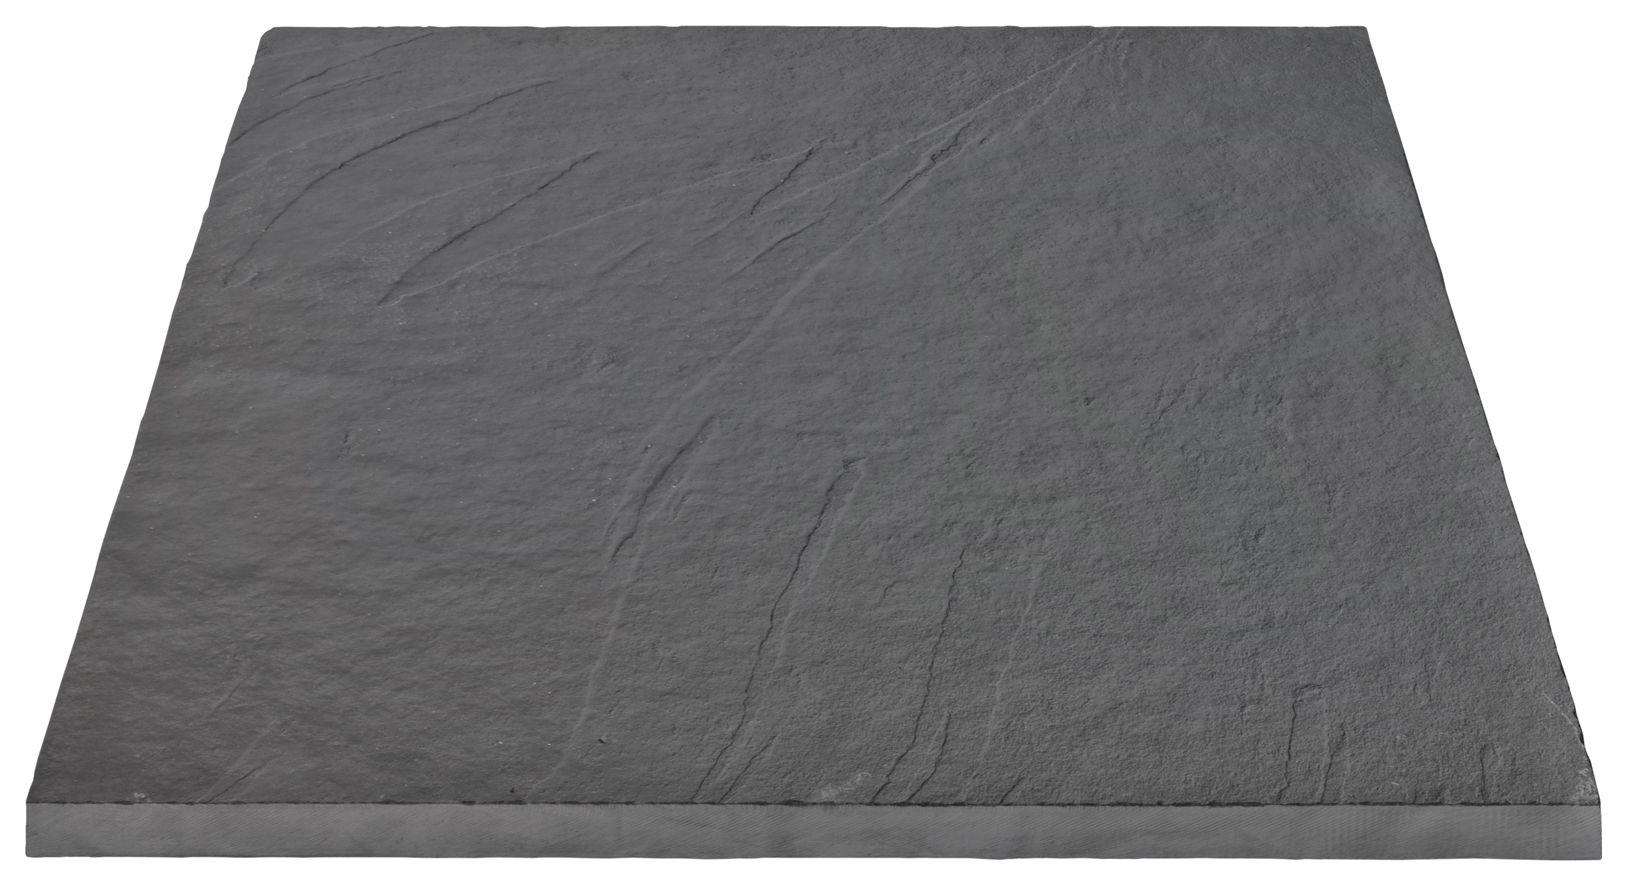 Marshalls Casarta Slate Textured Black Paving Slab - Sample